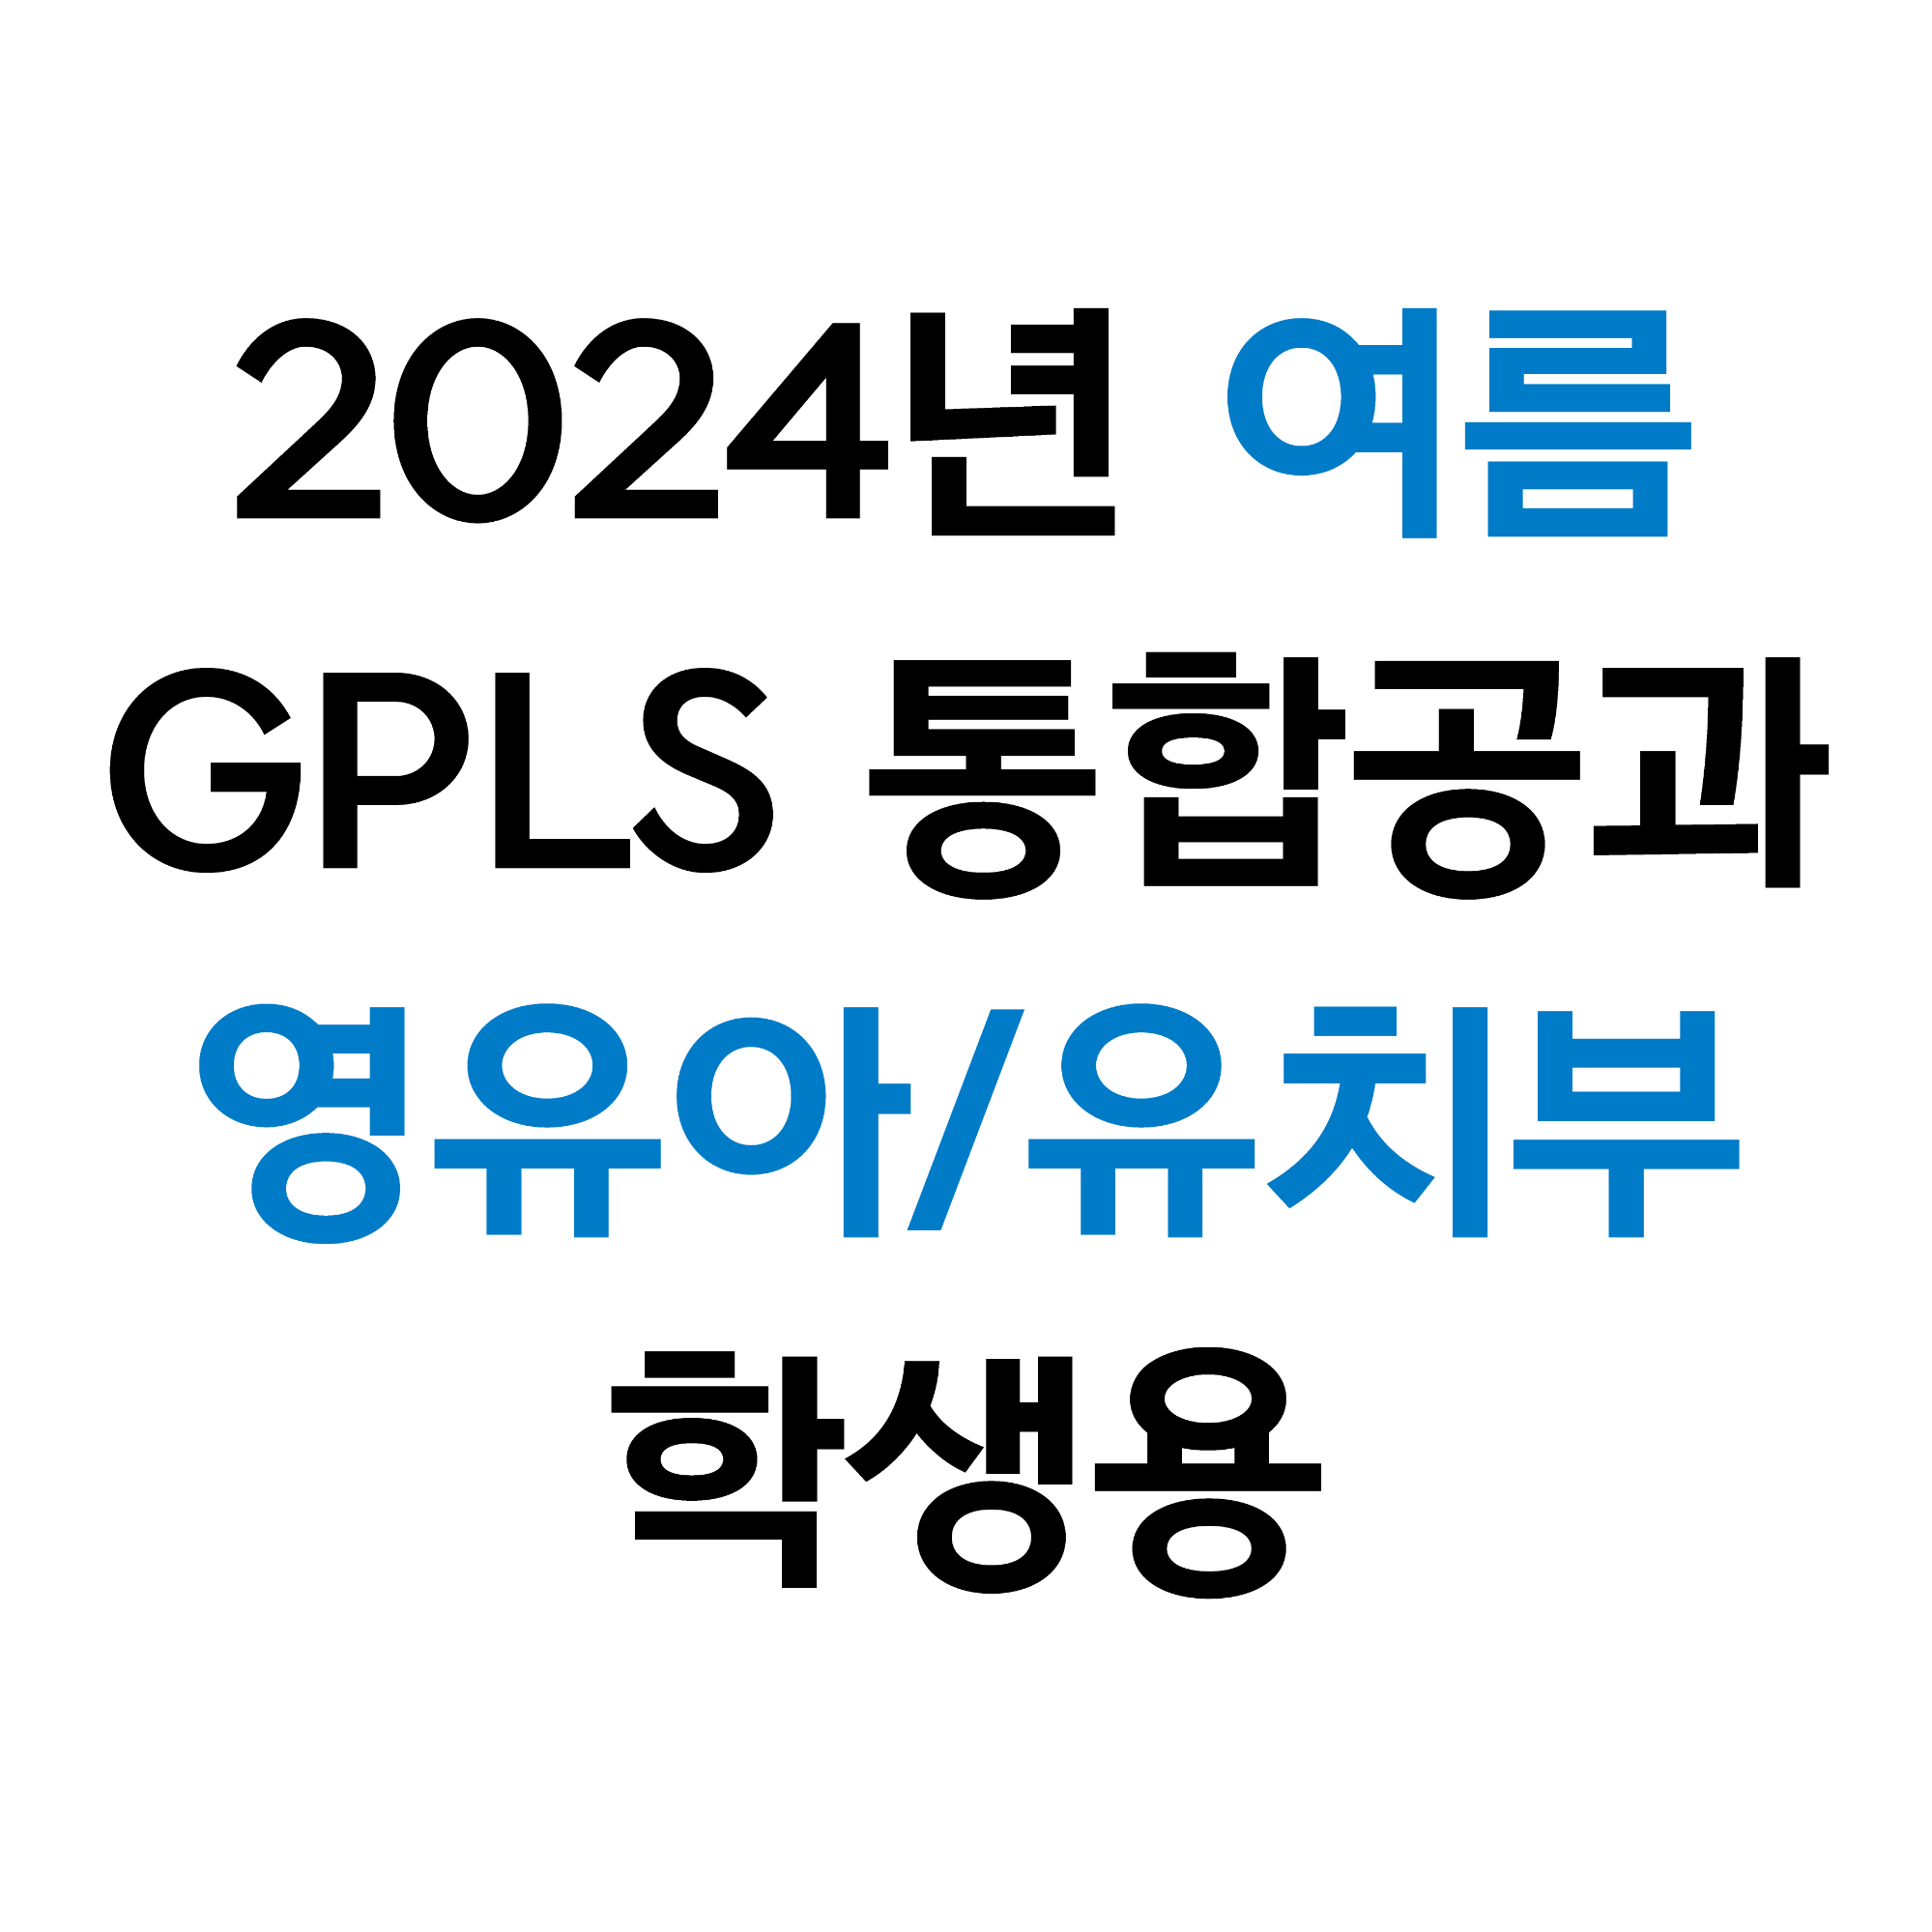 9191! 라파키즈/영유아유치부 학생용 (2024 통합 여름)